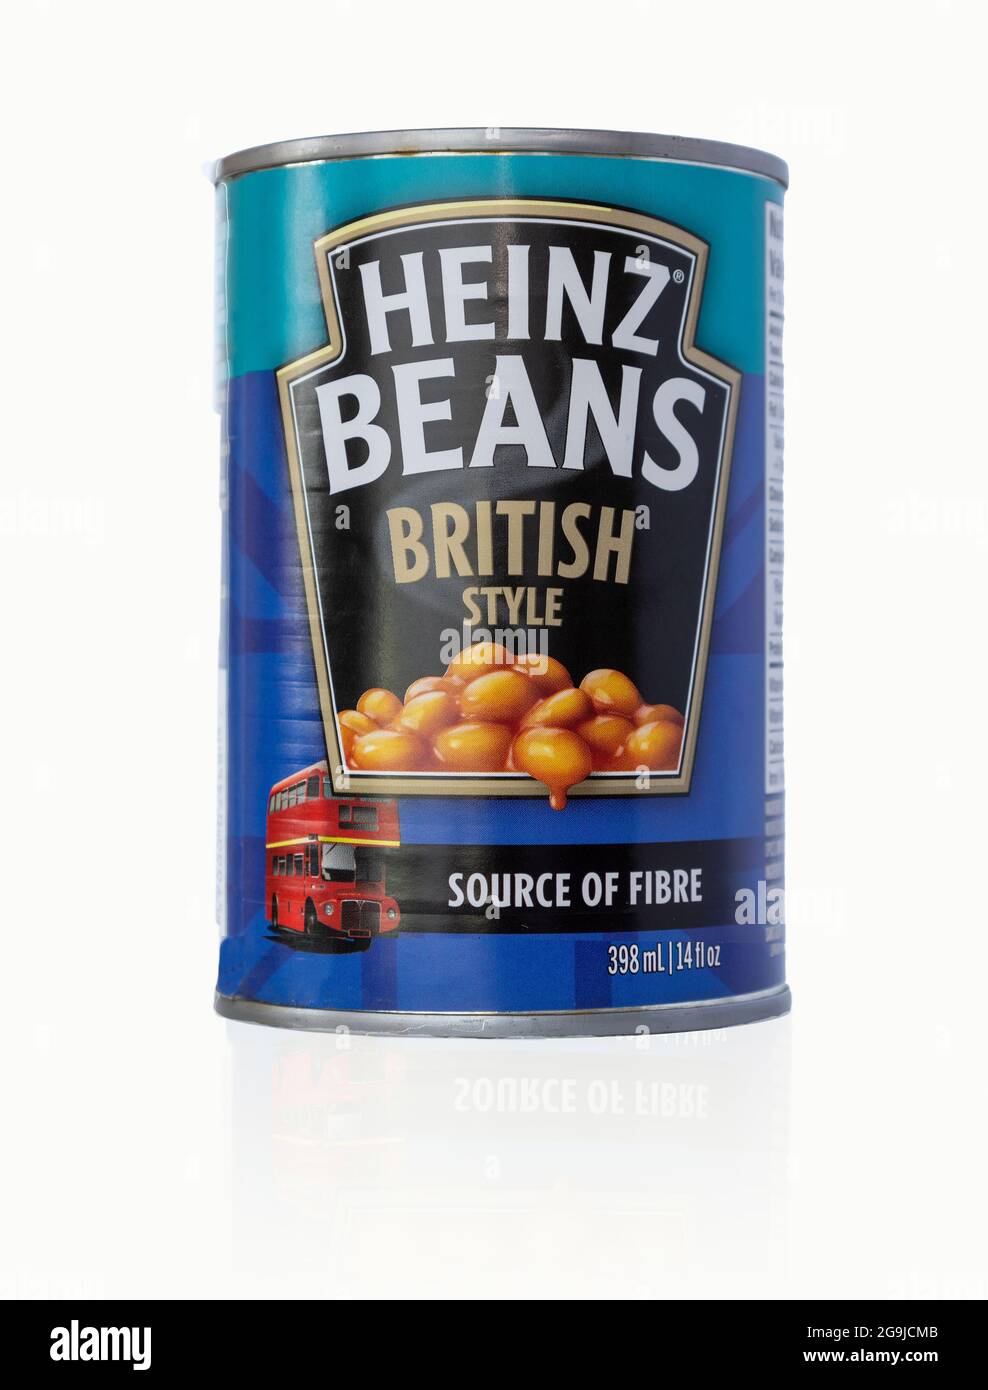 Il canadese Heinz cotta Beans stile britannico può ricetta differente al canadese normale Heinz cotta Beans con meno zucchero e calorie più basse Foto Stock